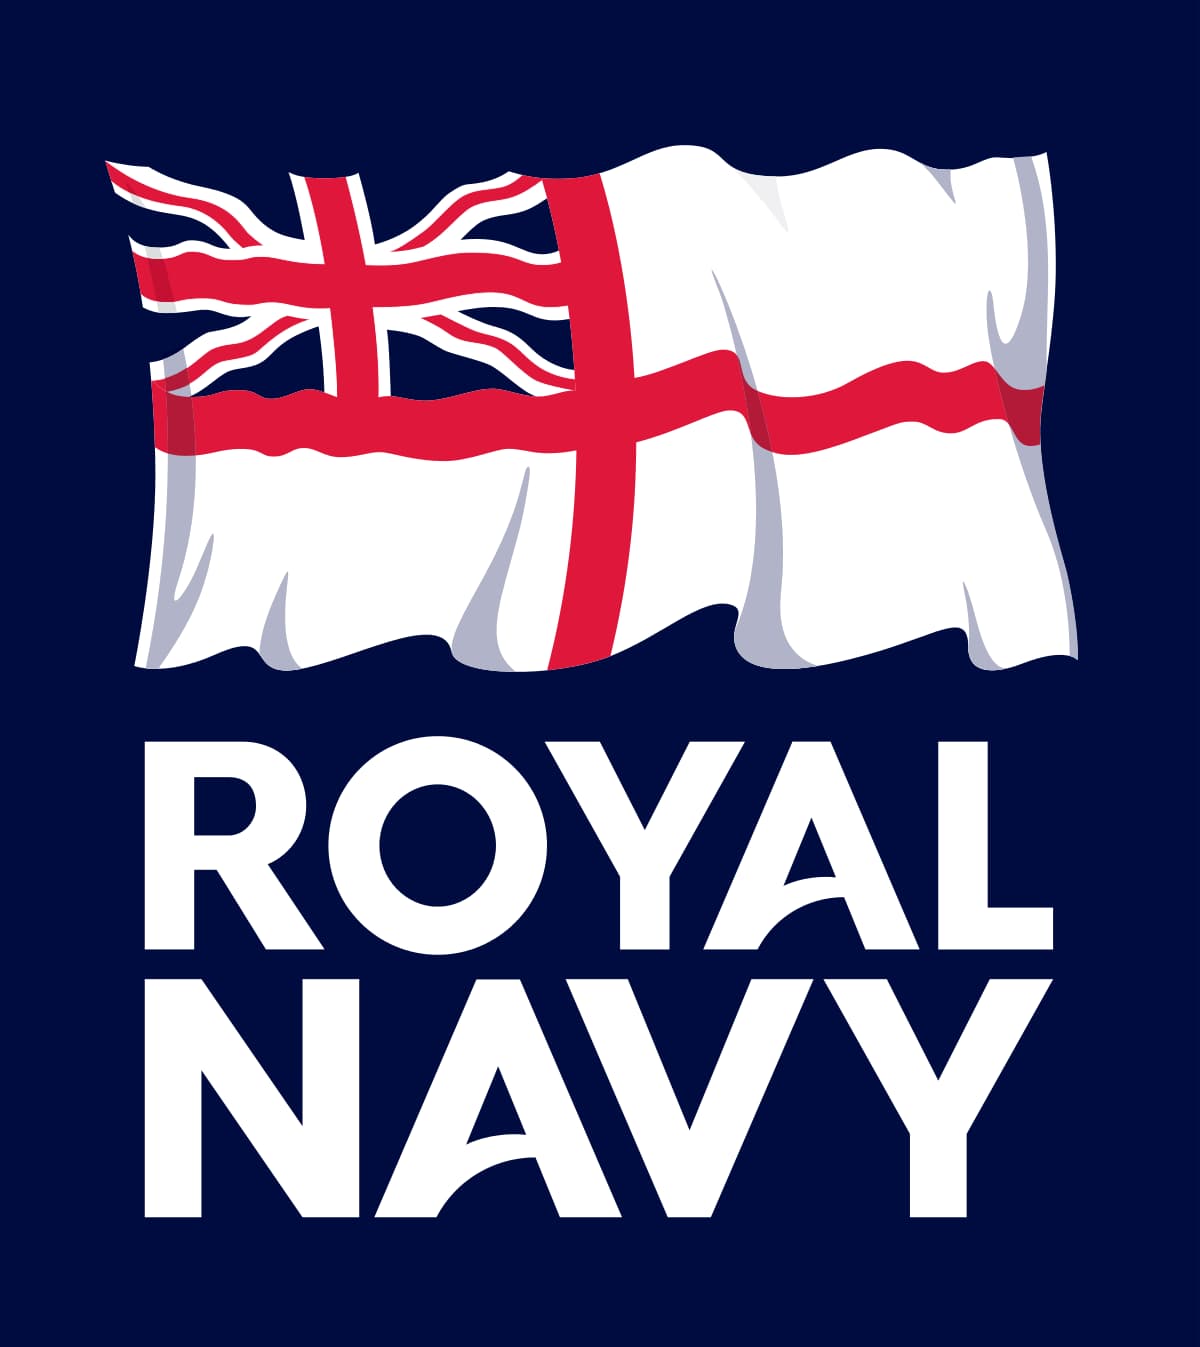 The Royal Navy logo